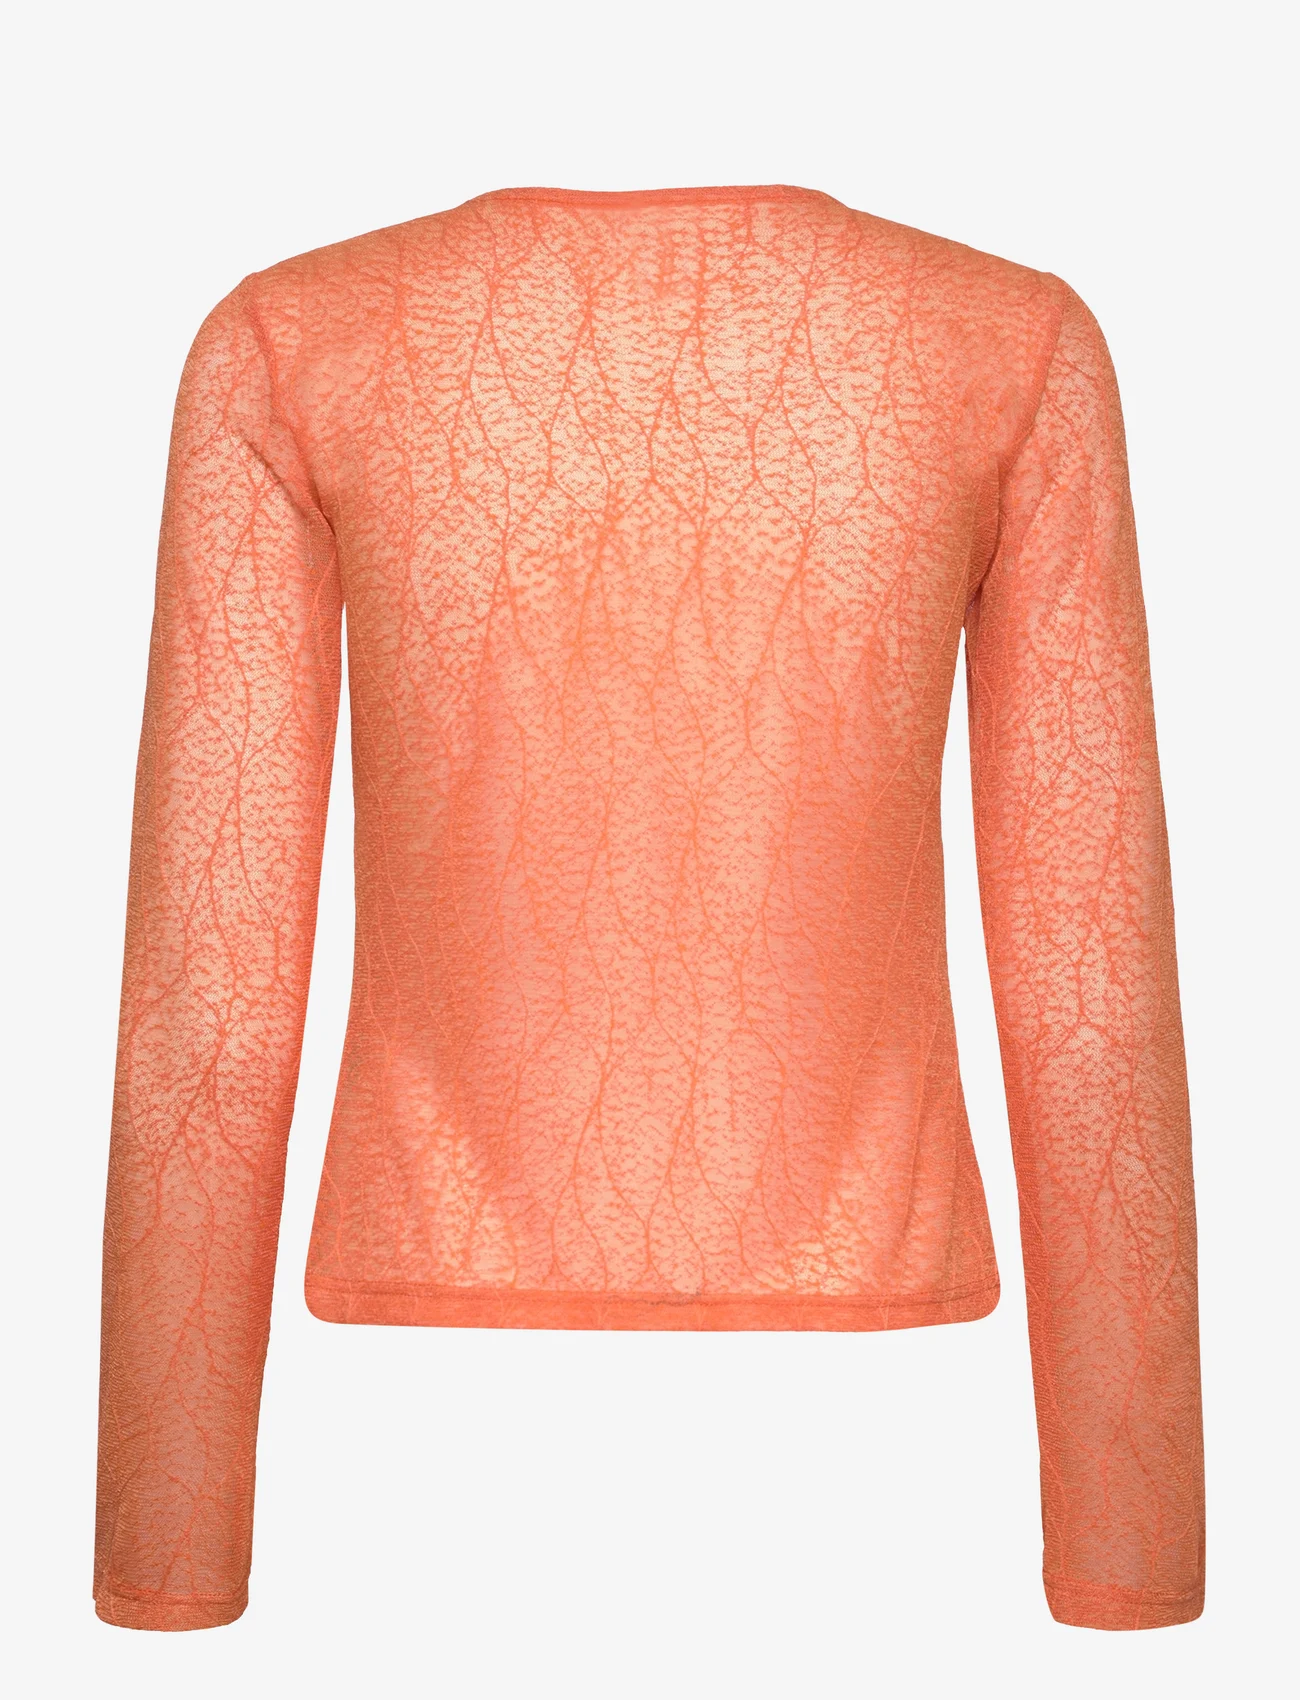 Résumé - RomRS Blouse - blouses met lange mouwen - orange - 1